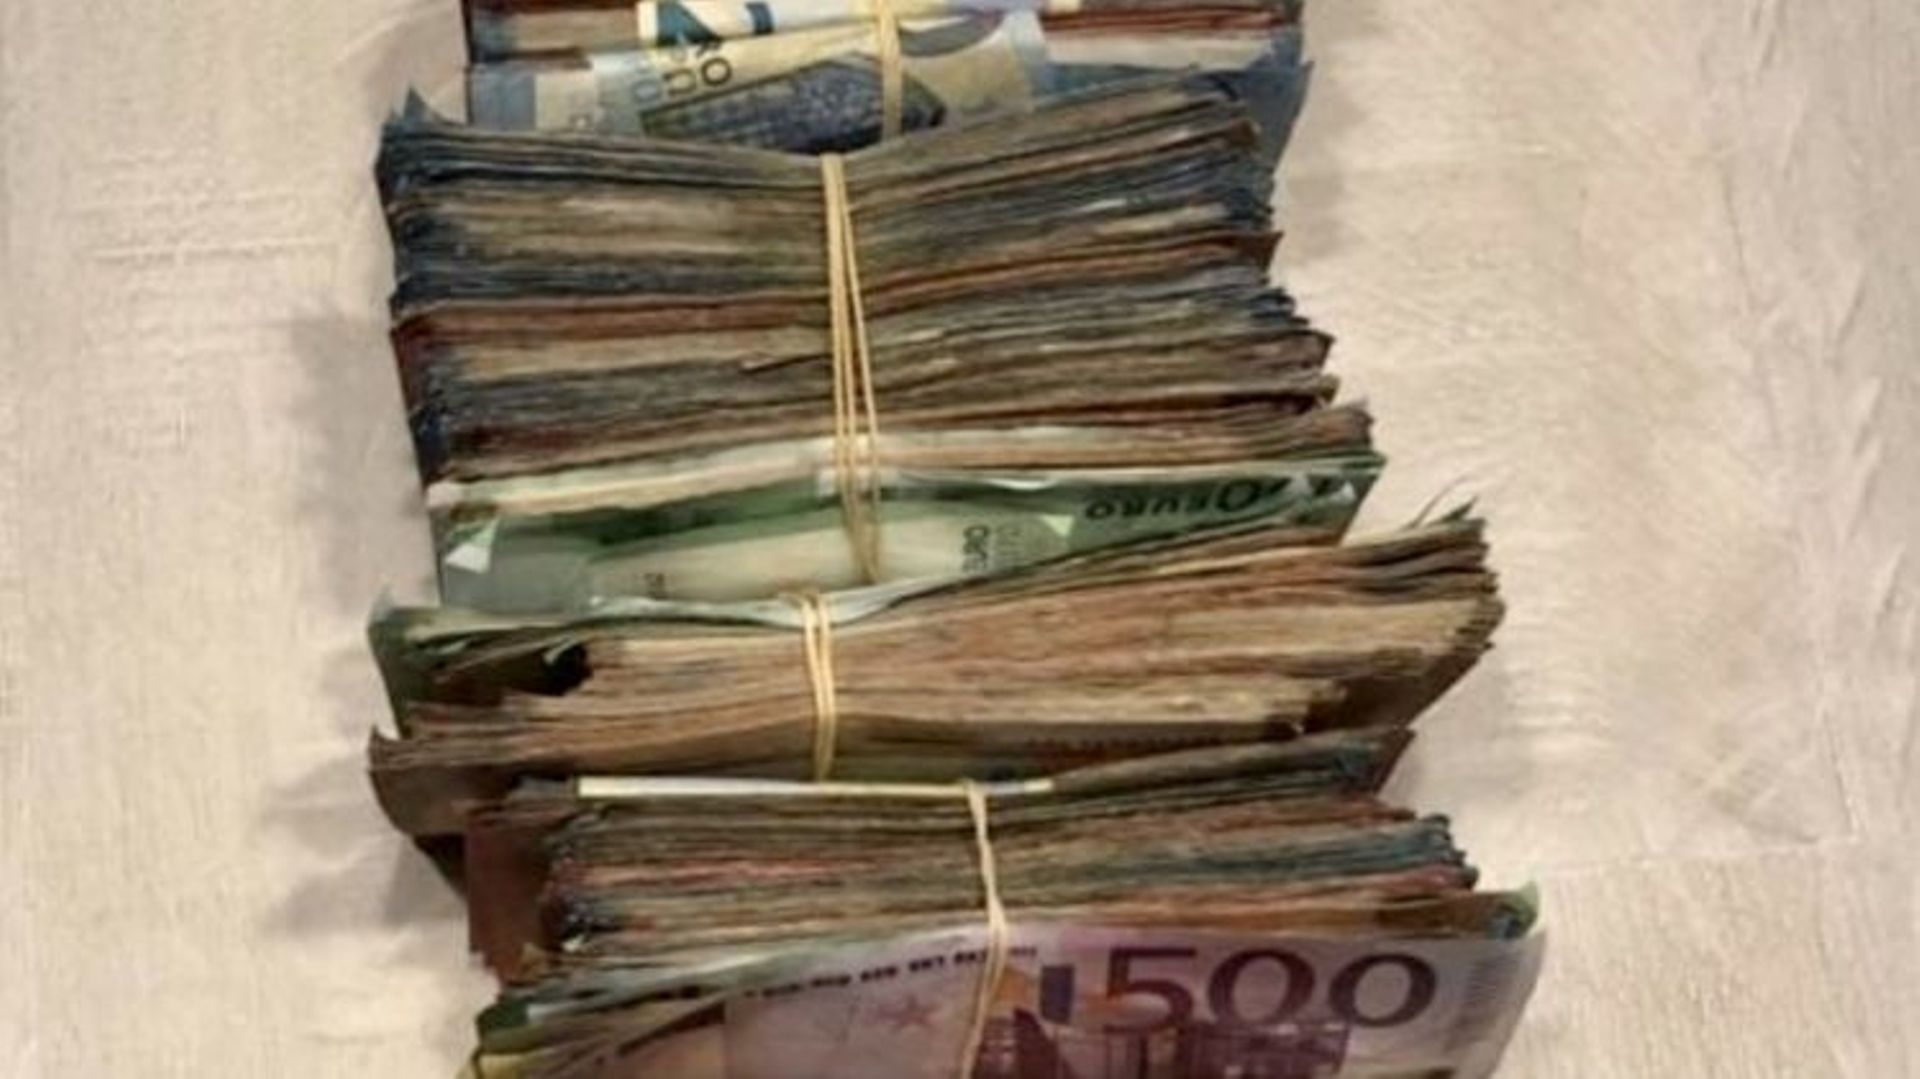 Plus de 100.000 euros en cash et 80 kilos de cocaïne ont été saisis